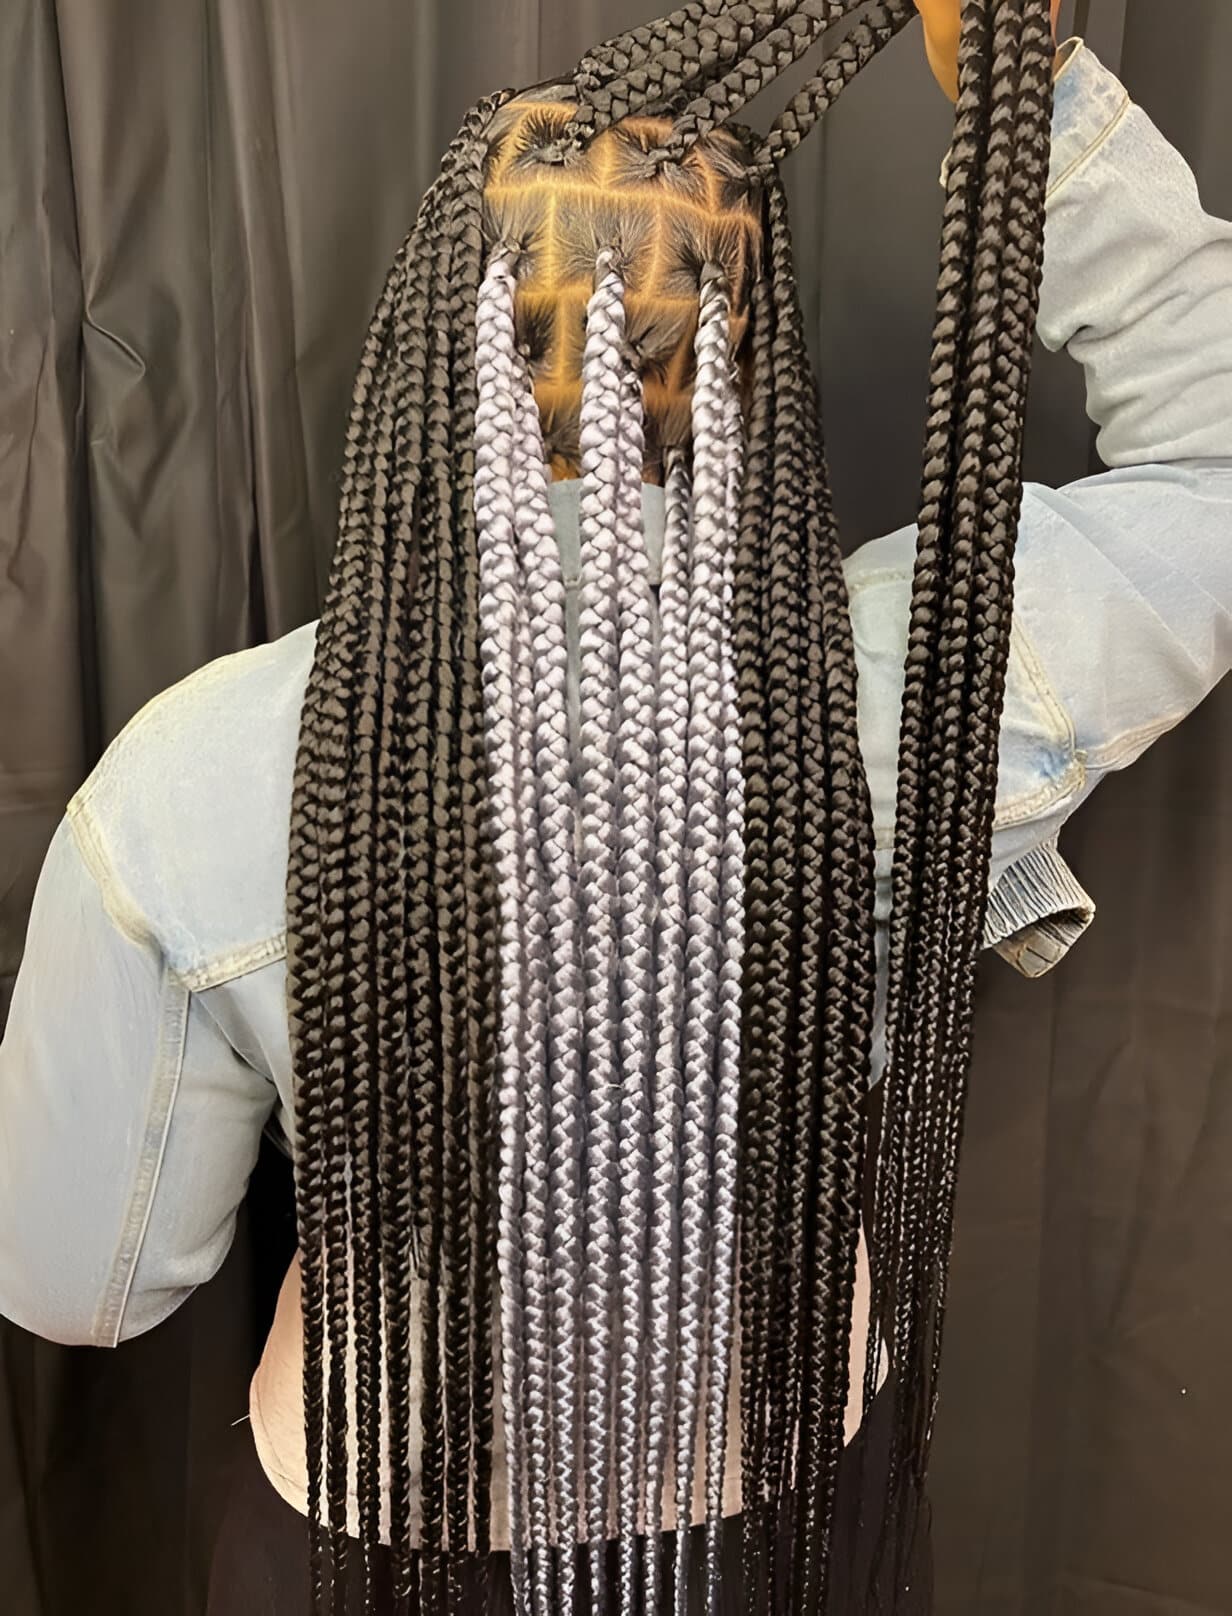 Image of Grey Peekaboo Braids inspired by Peekaboo Braids Hairstyles